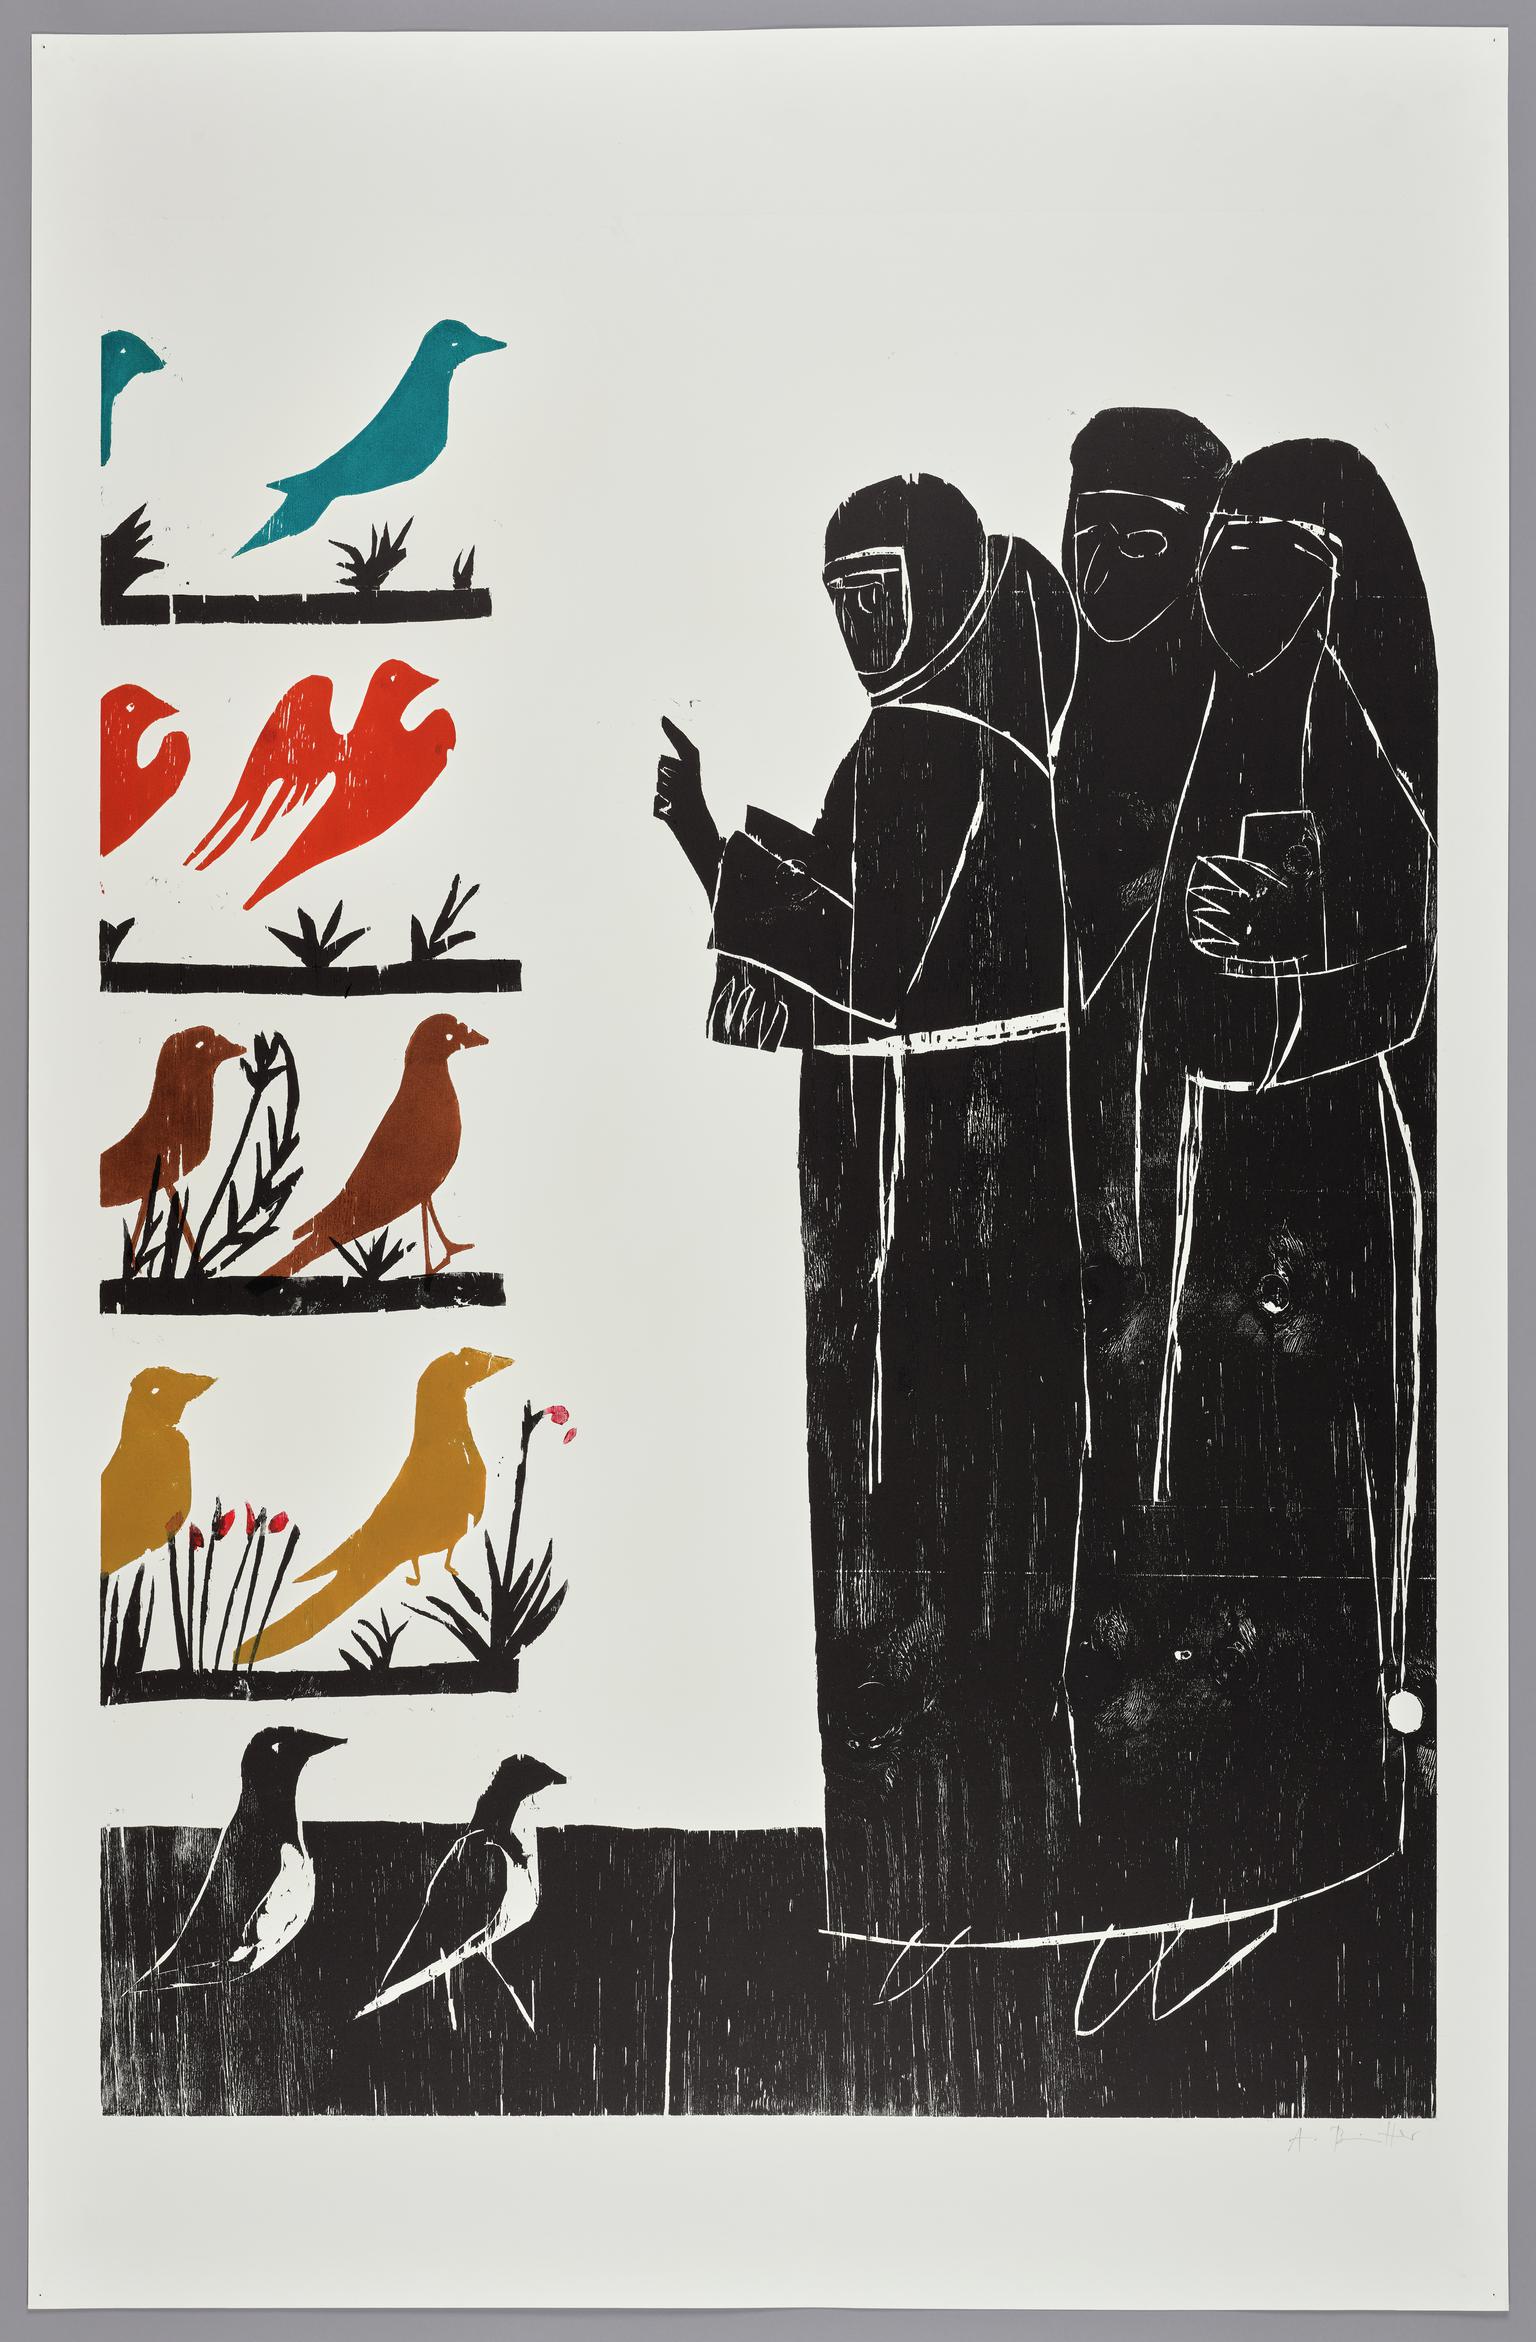 Vogelpredigt (sermon to the birds)